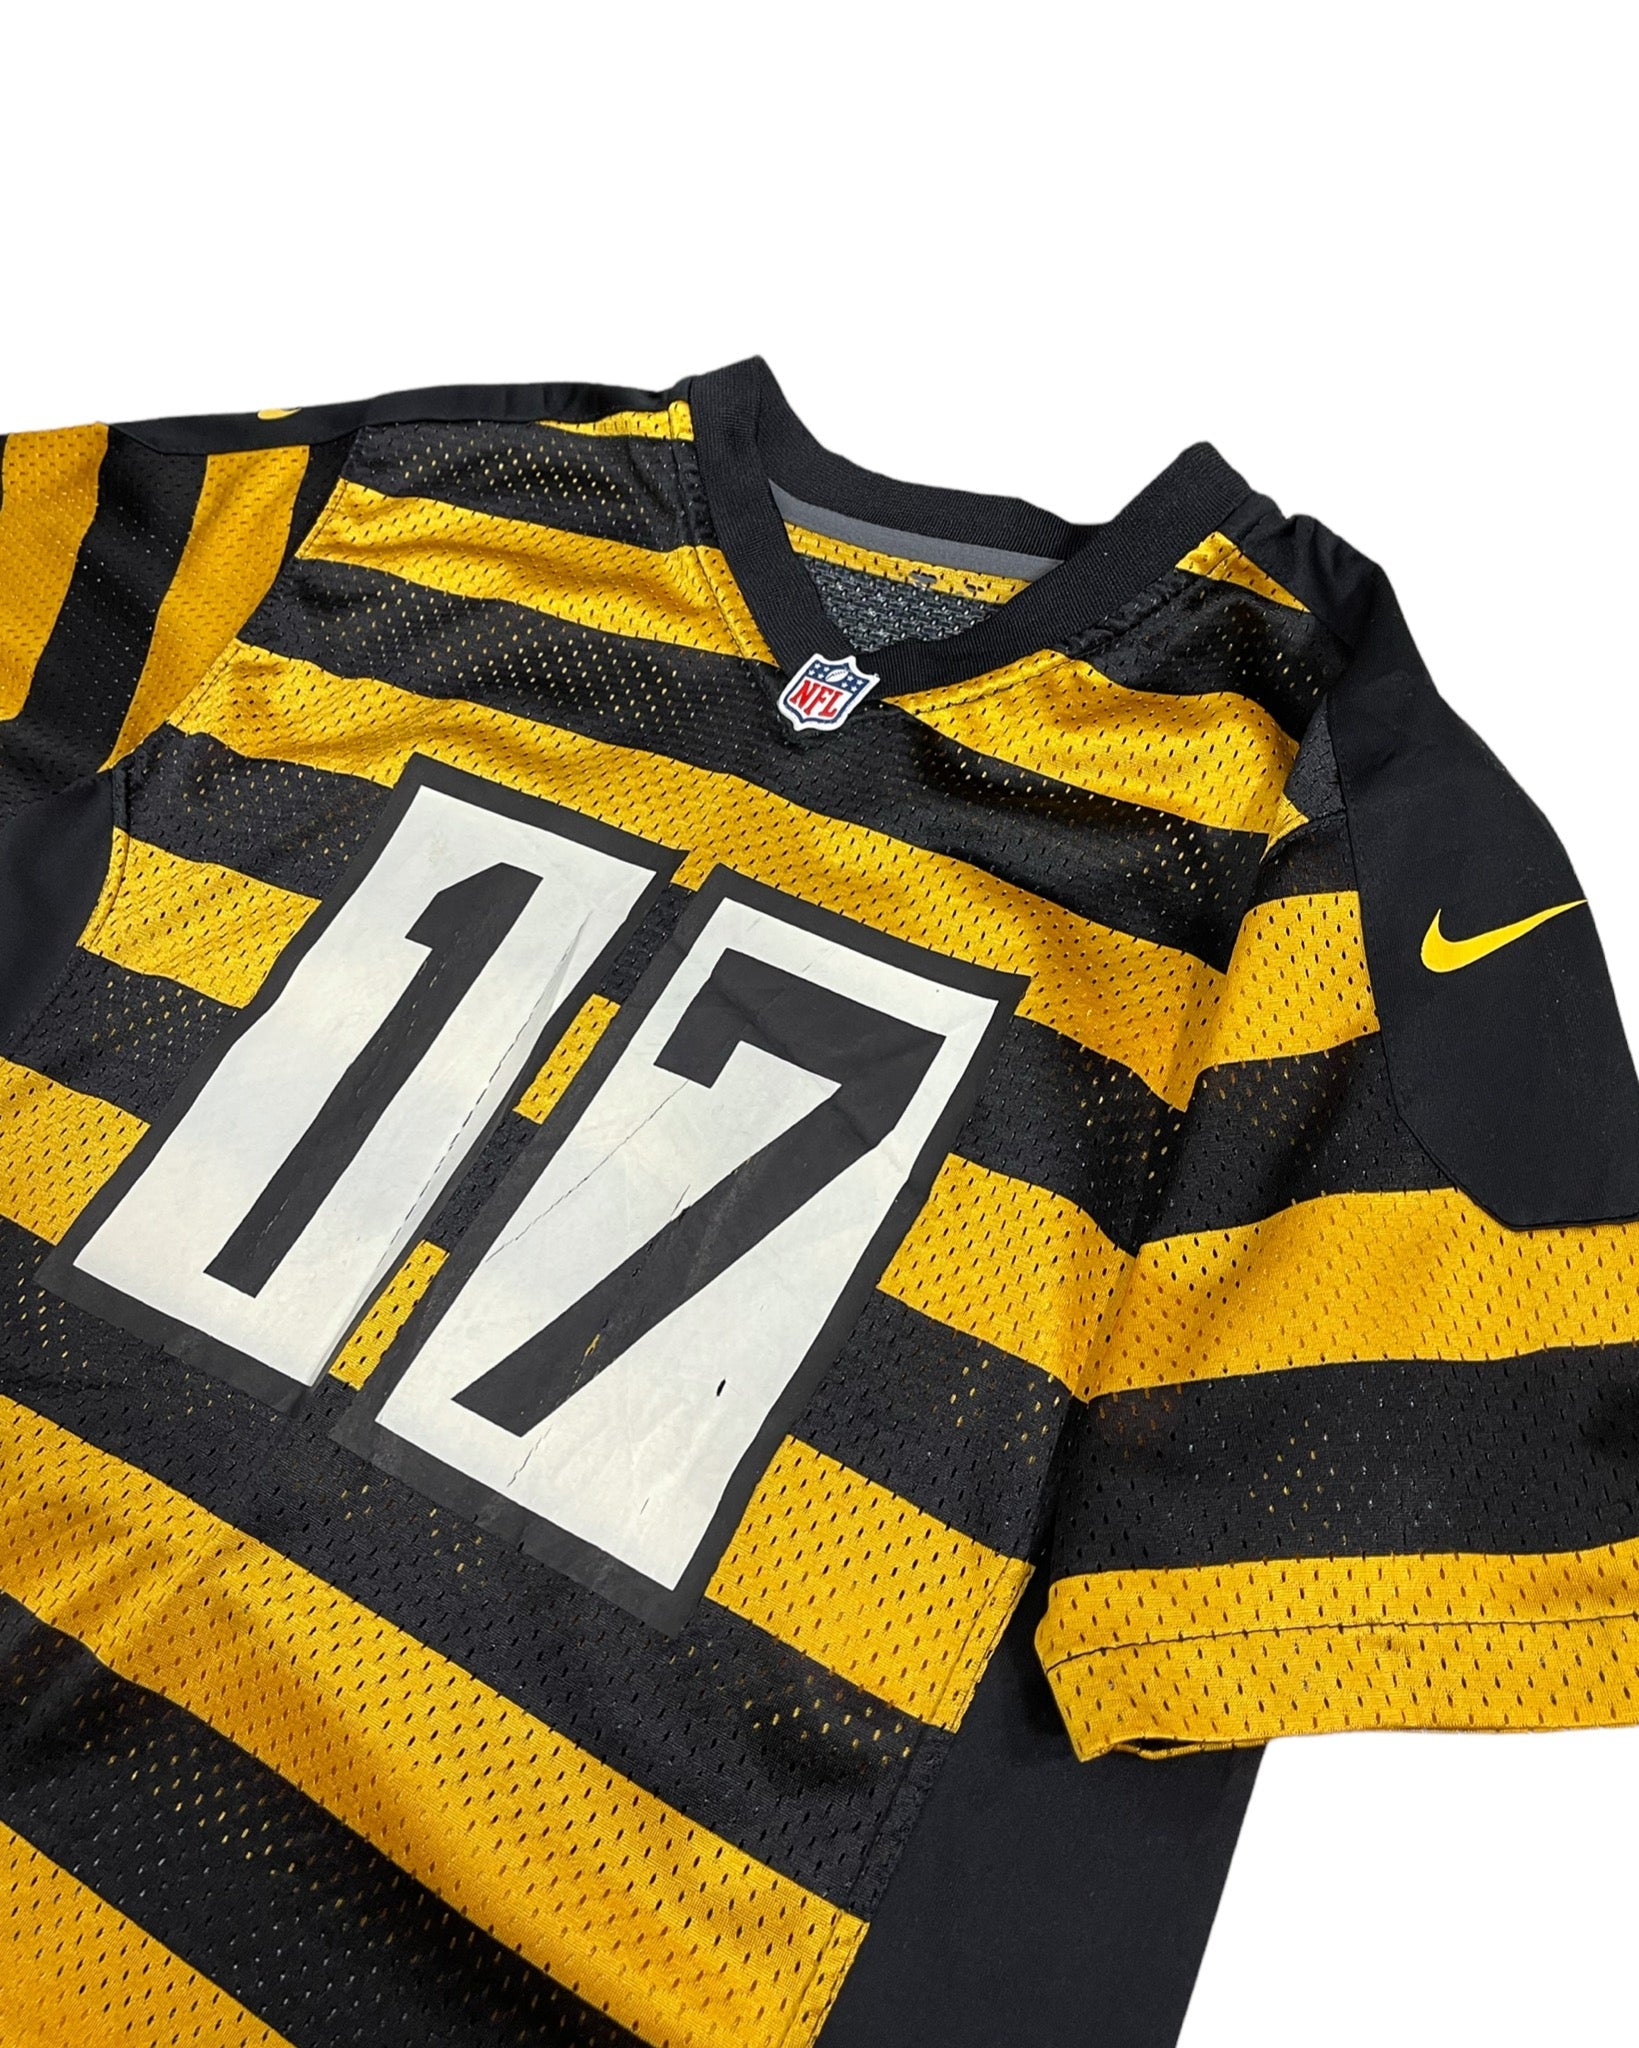   NFL Maillot de NFL - Pittsburgh Steelers - XS - PLOMOSTORE